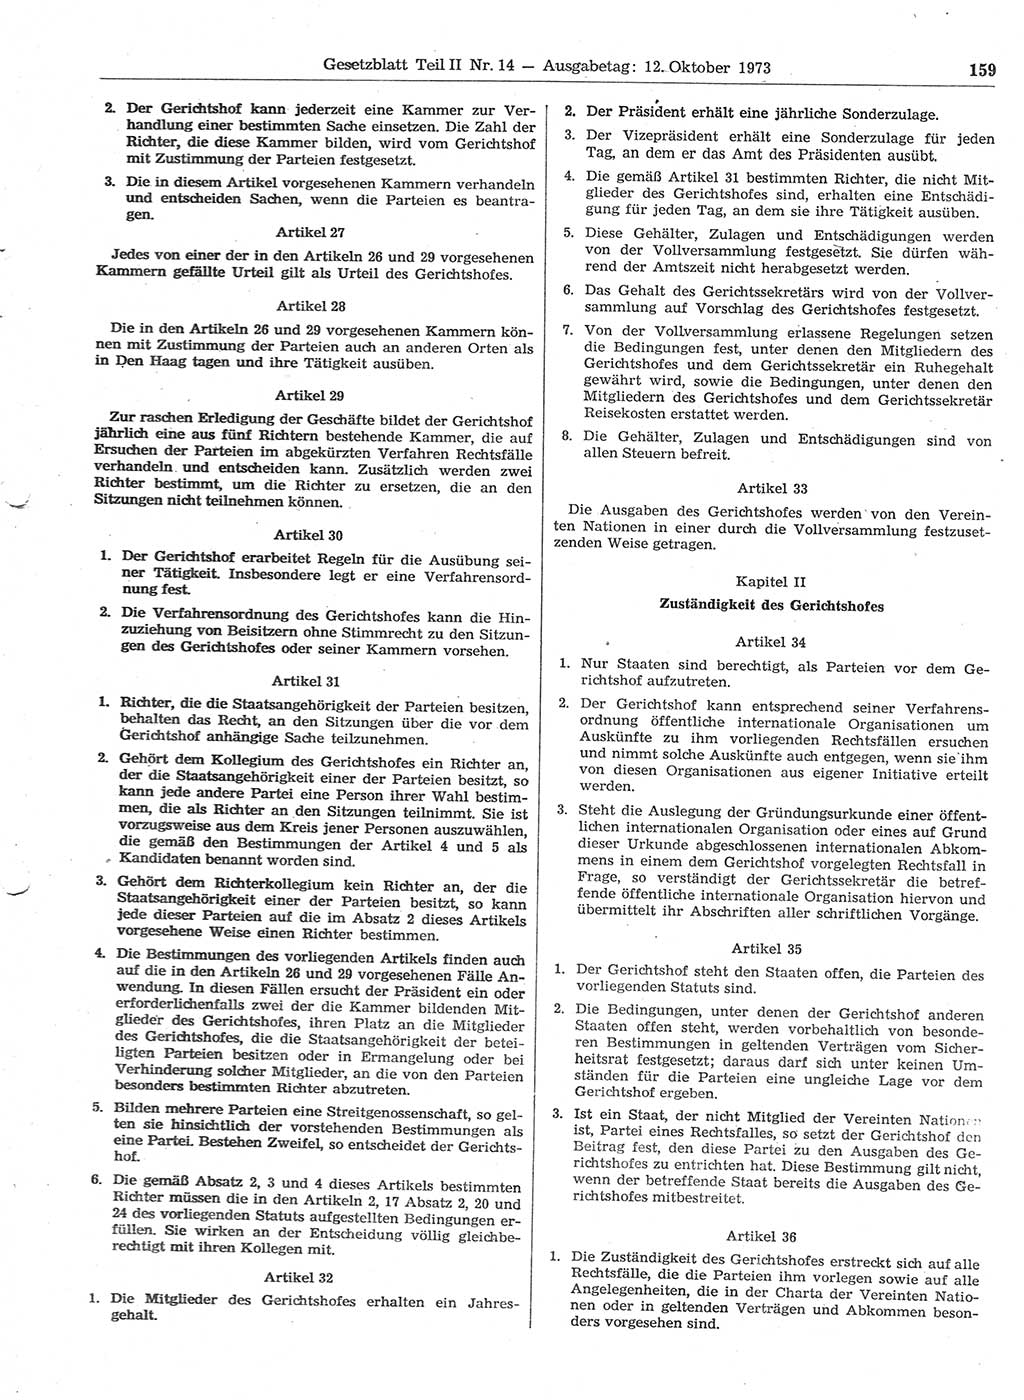 Gesetzblatt (GBl.) der Deutschen Demokratischen Republik (DDR) Teil ⅠⅠ 1973, Seite 159 (GBl. DDR ⅠⅠ 1973, S. 159)